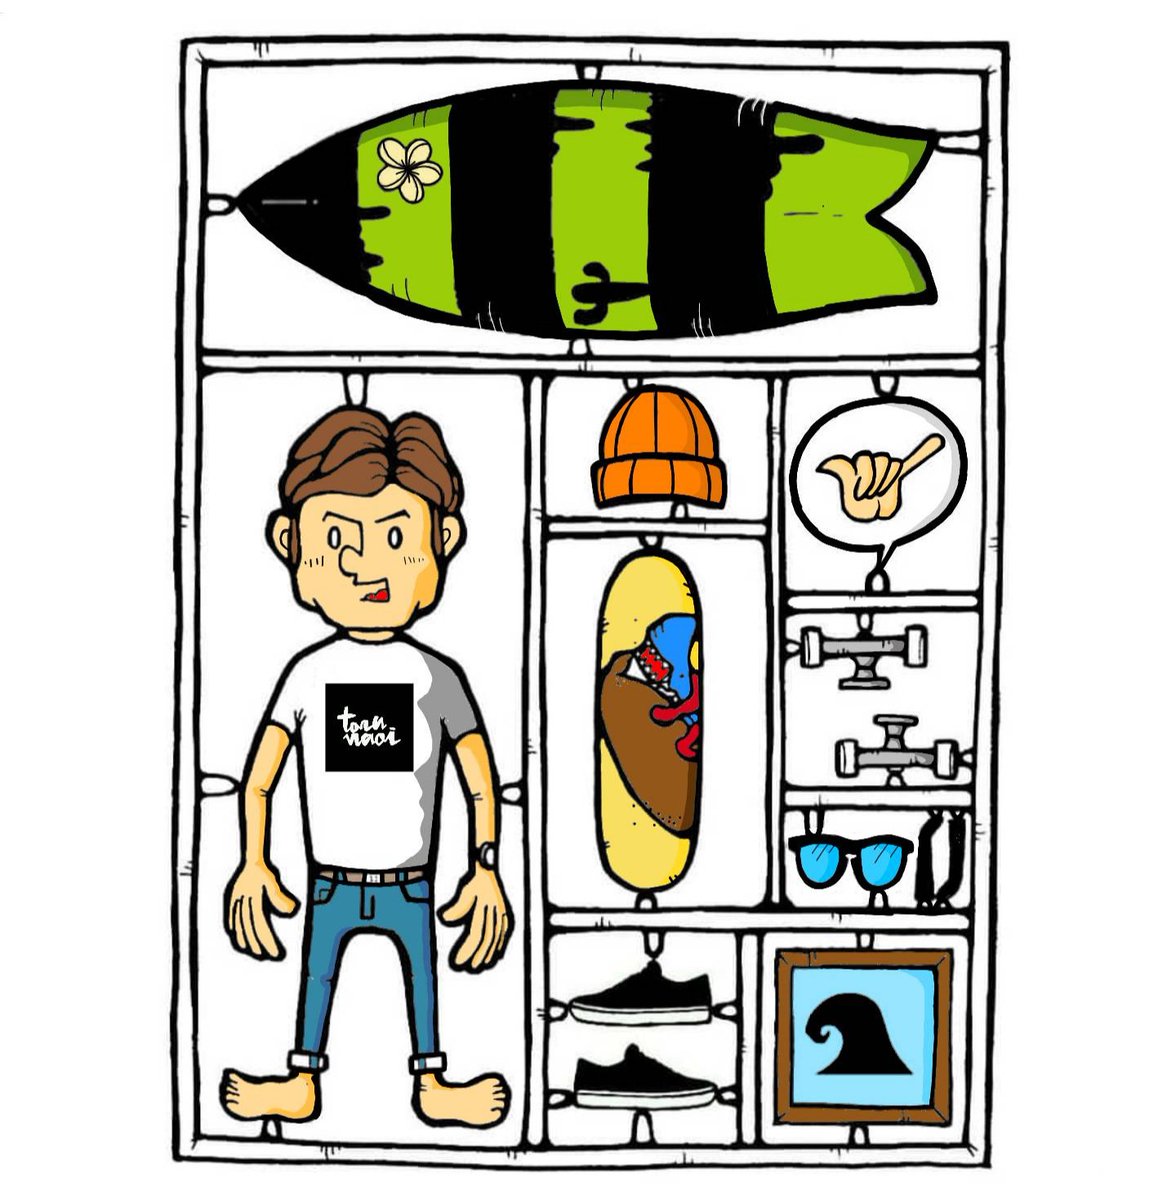 直井 徹 プラモデル プラモデル イラスト イラストレーション オモチャ Plasticmodel Illust Illustration Illustration Surfing Surfer Toy